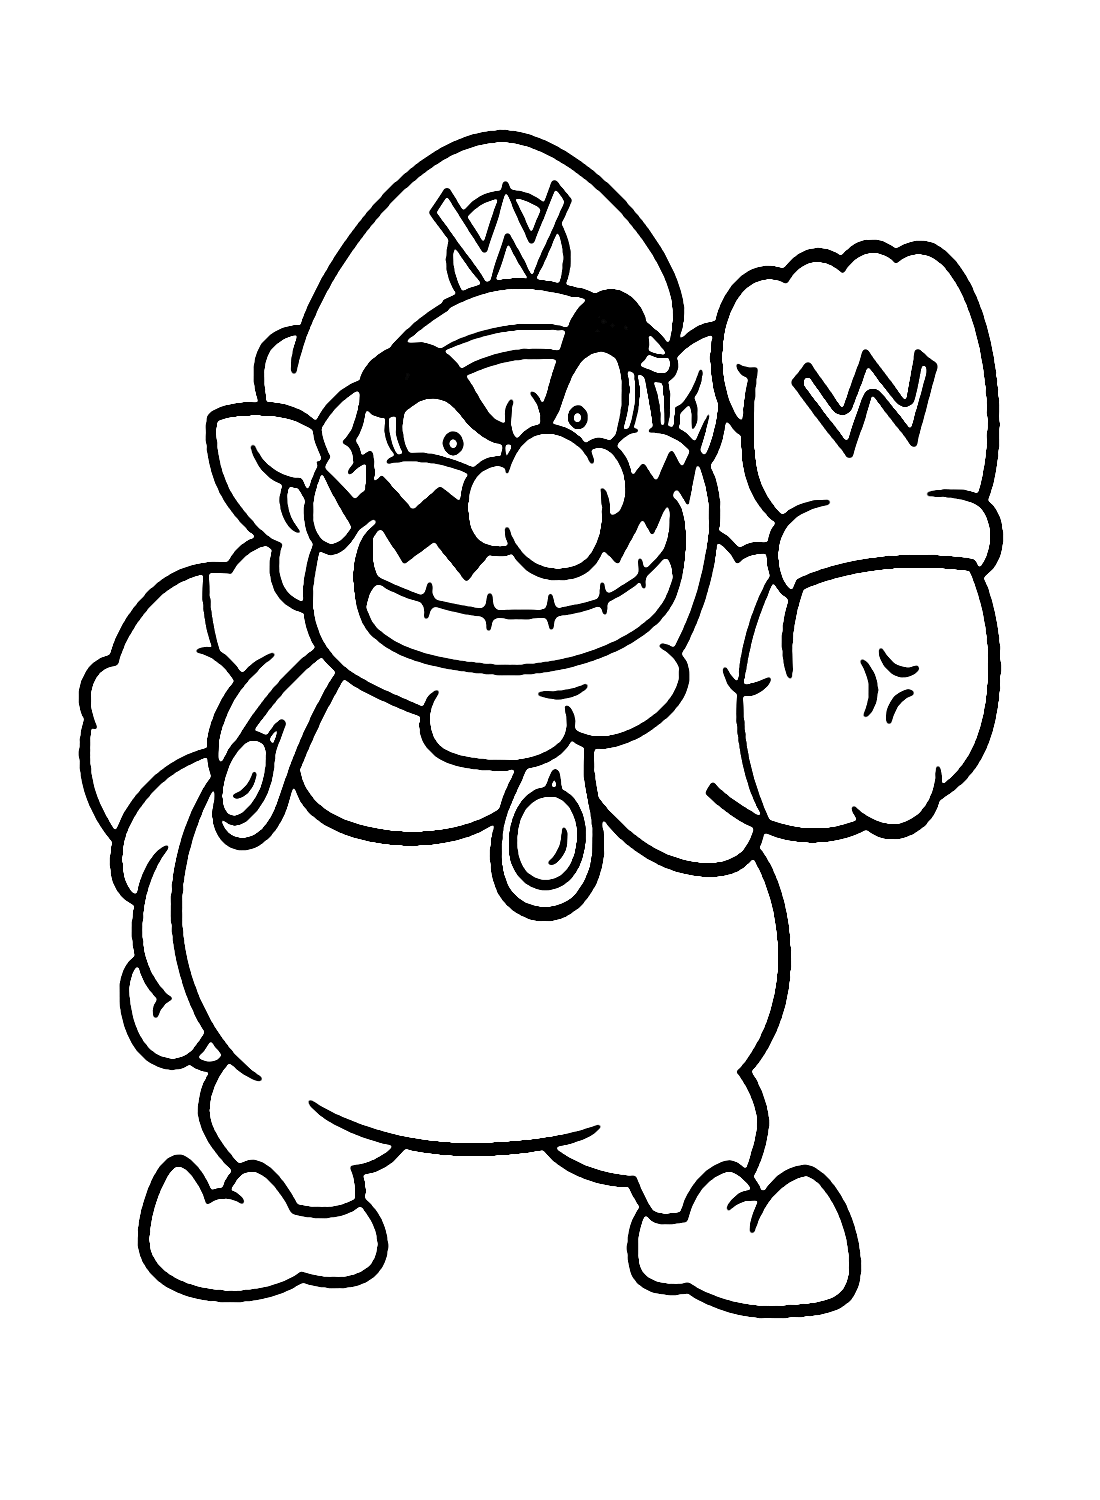 Wario von Super Mario von Wario